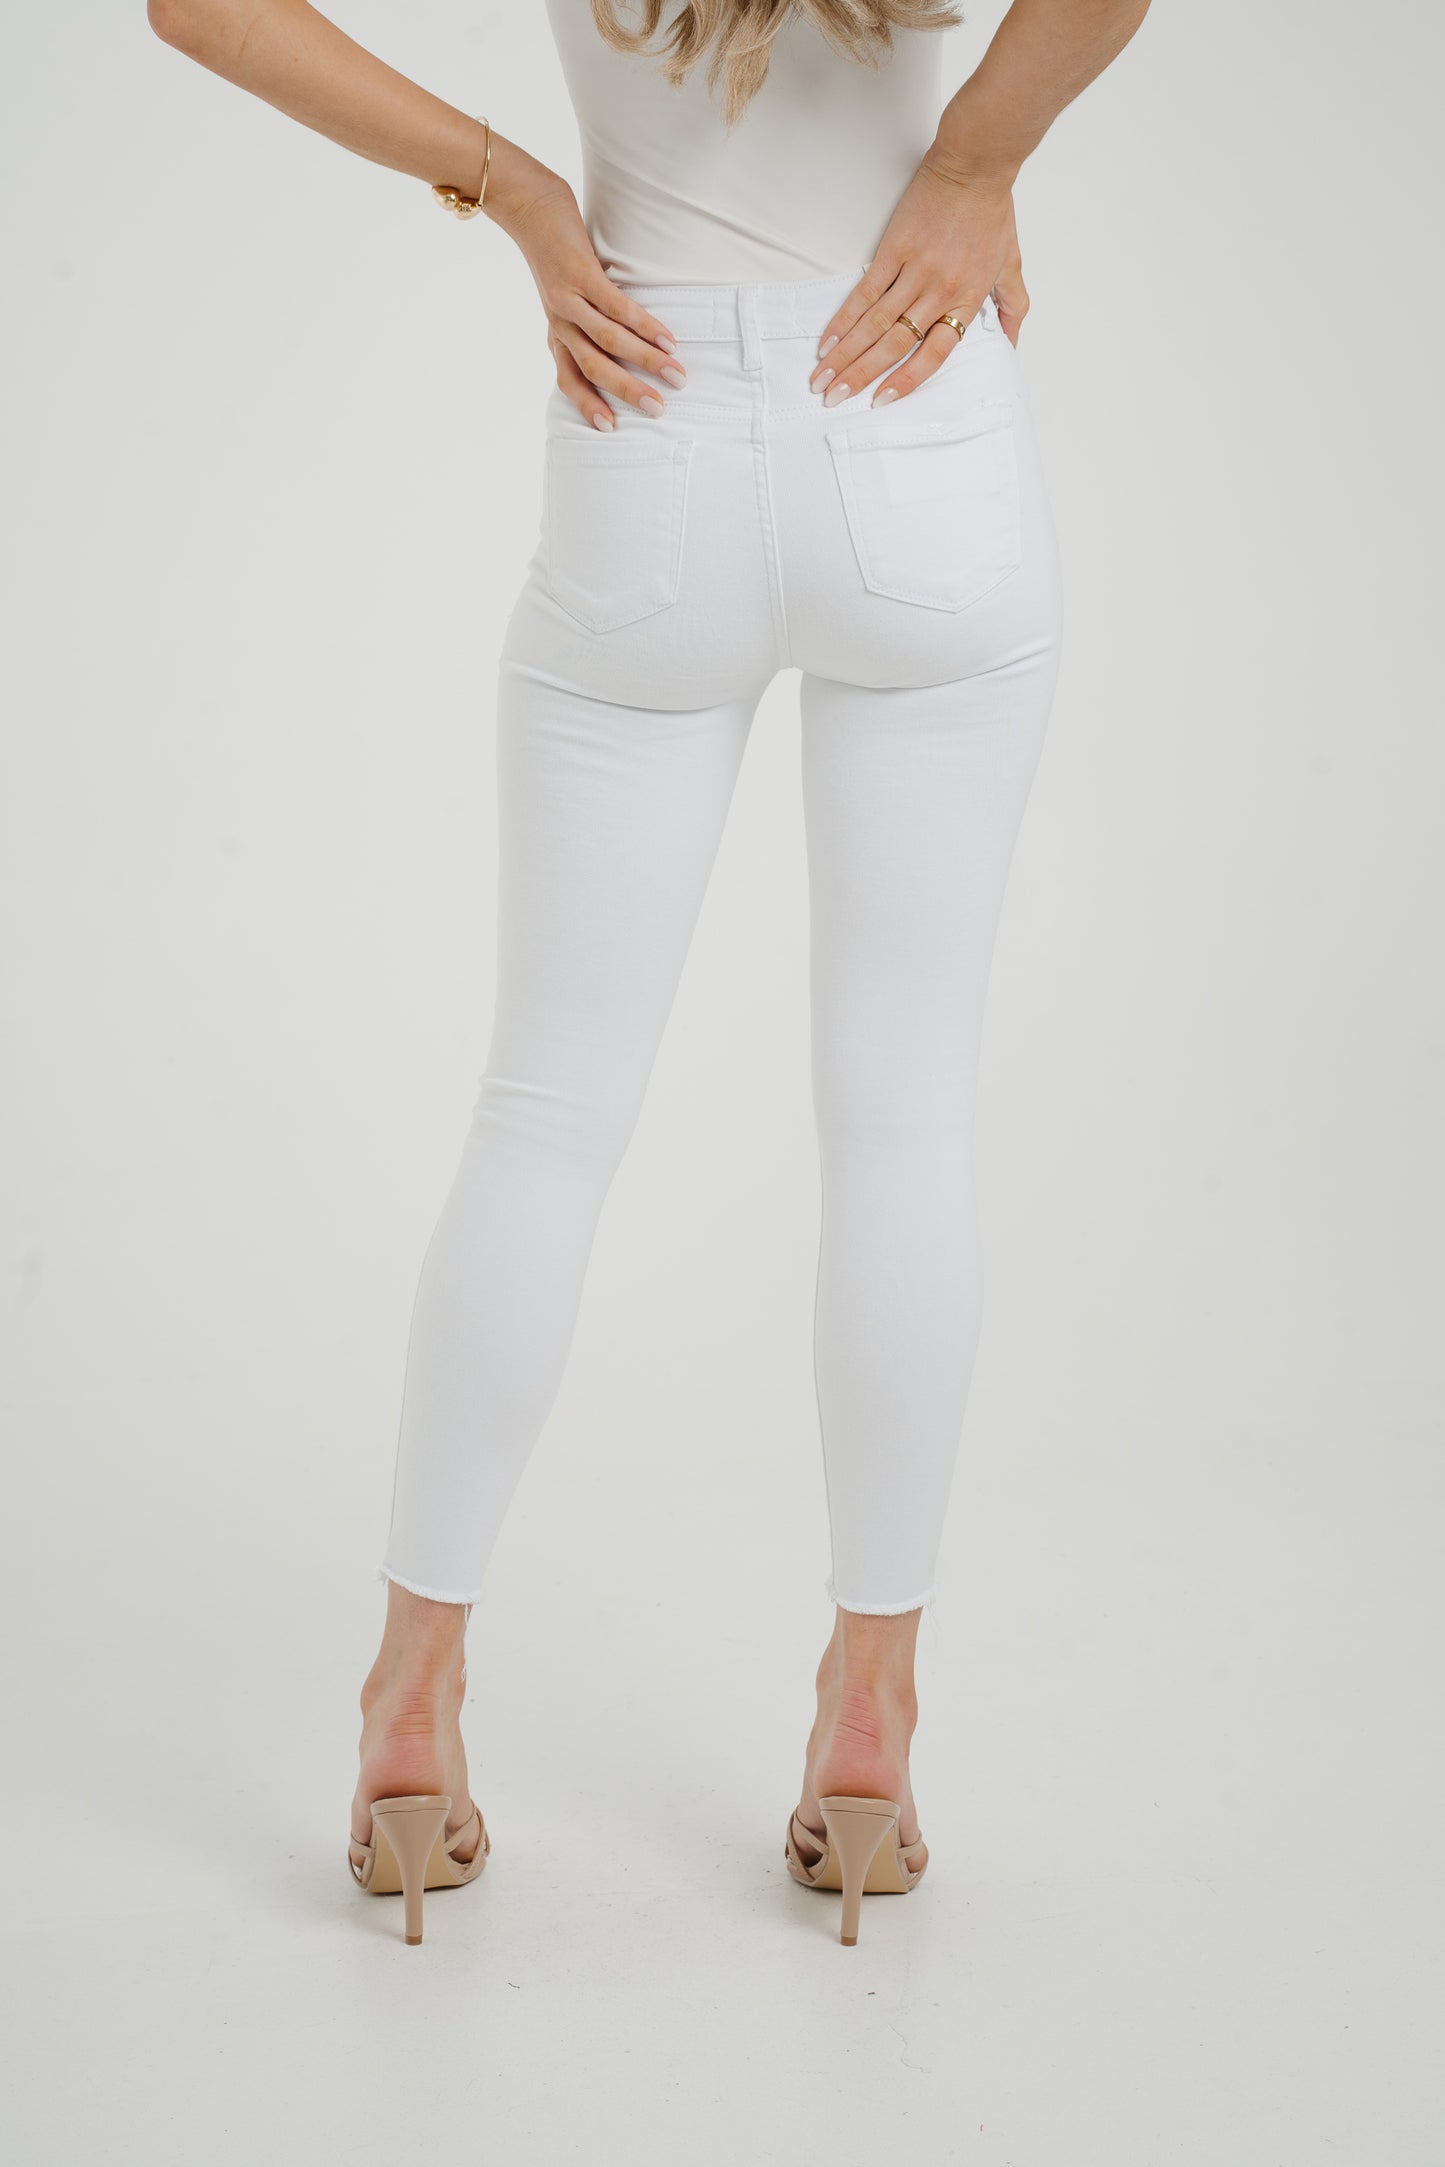 Naomi Skinny Jeans In White